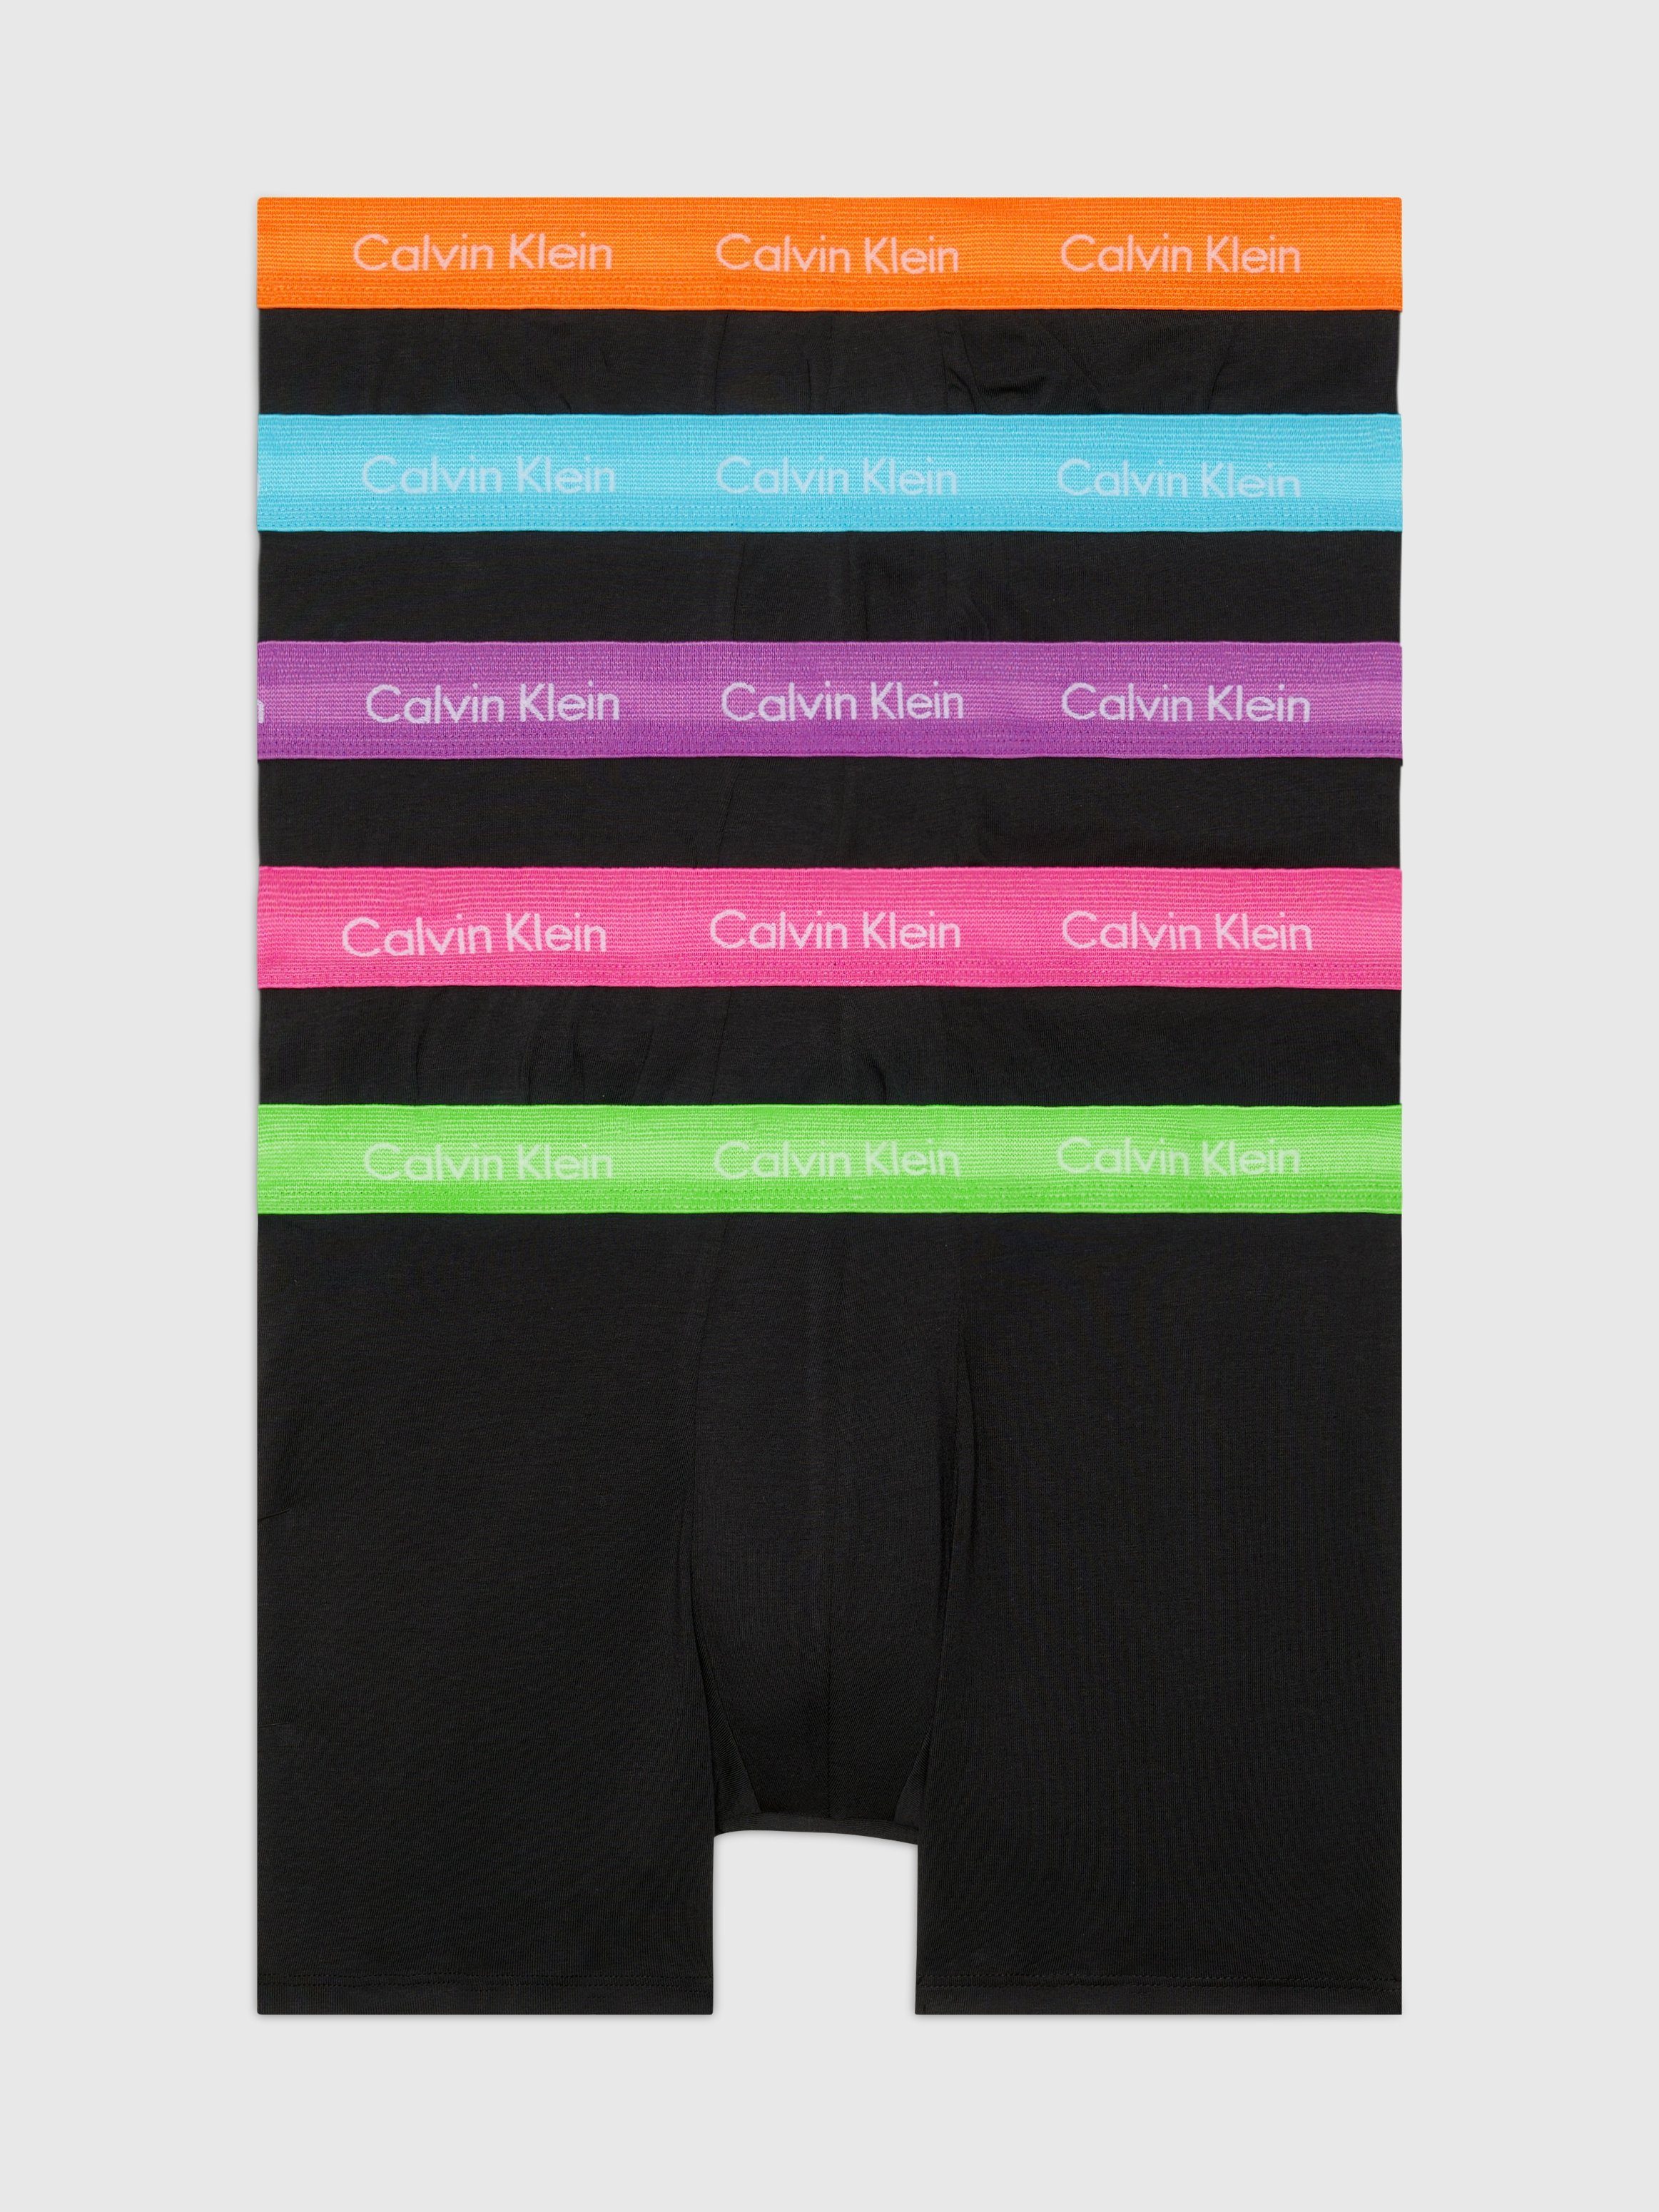 Calvin Klein Underwear Boxershort met label in band in een set van 5 stuks